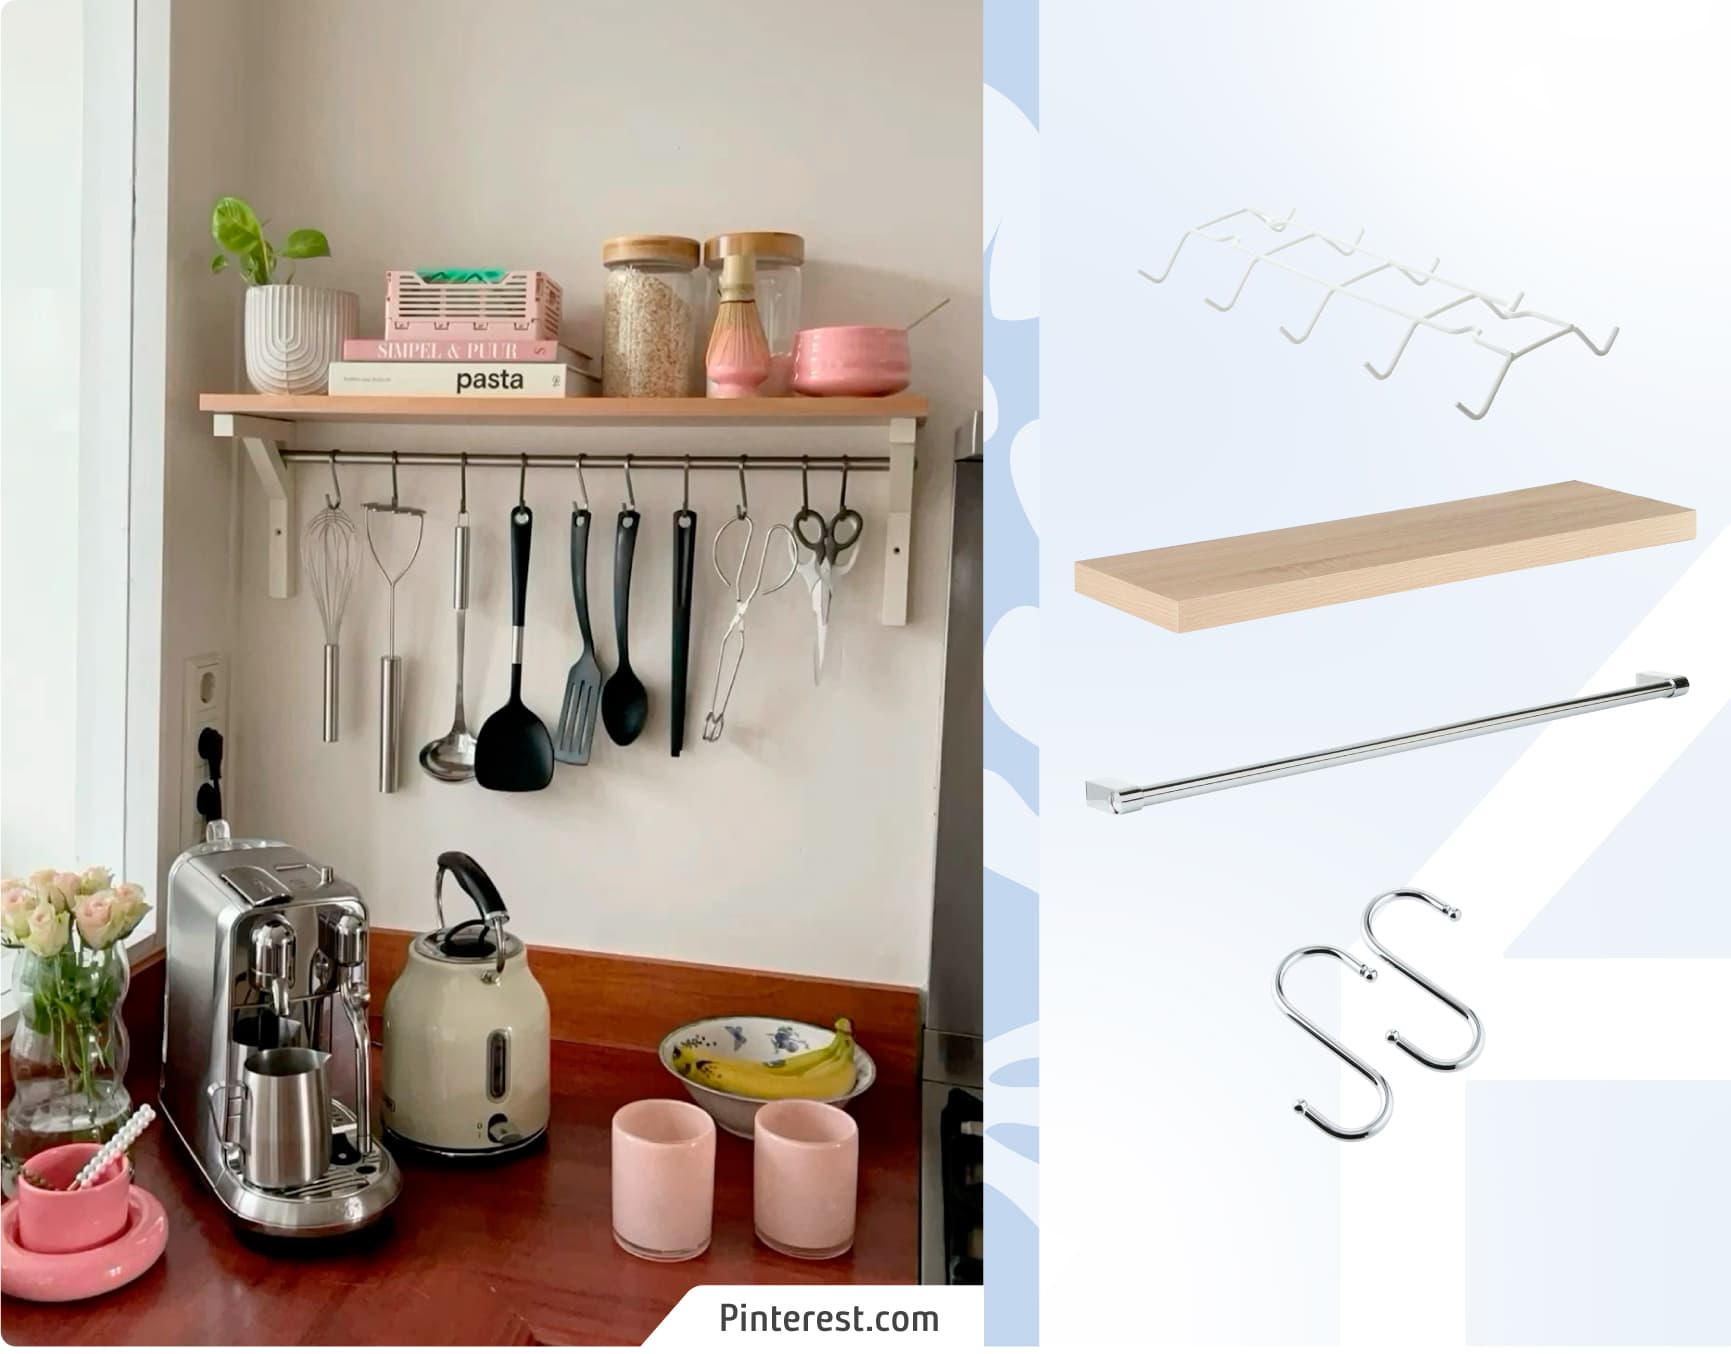 Moodboard Sodimac con foto de cocina con un muro con organización en vertical. Los productos Sodimac son una repisa flotante, una barra metálica y ganchos.